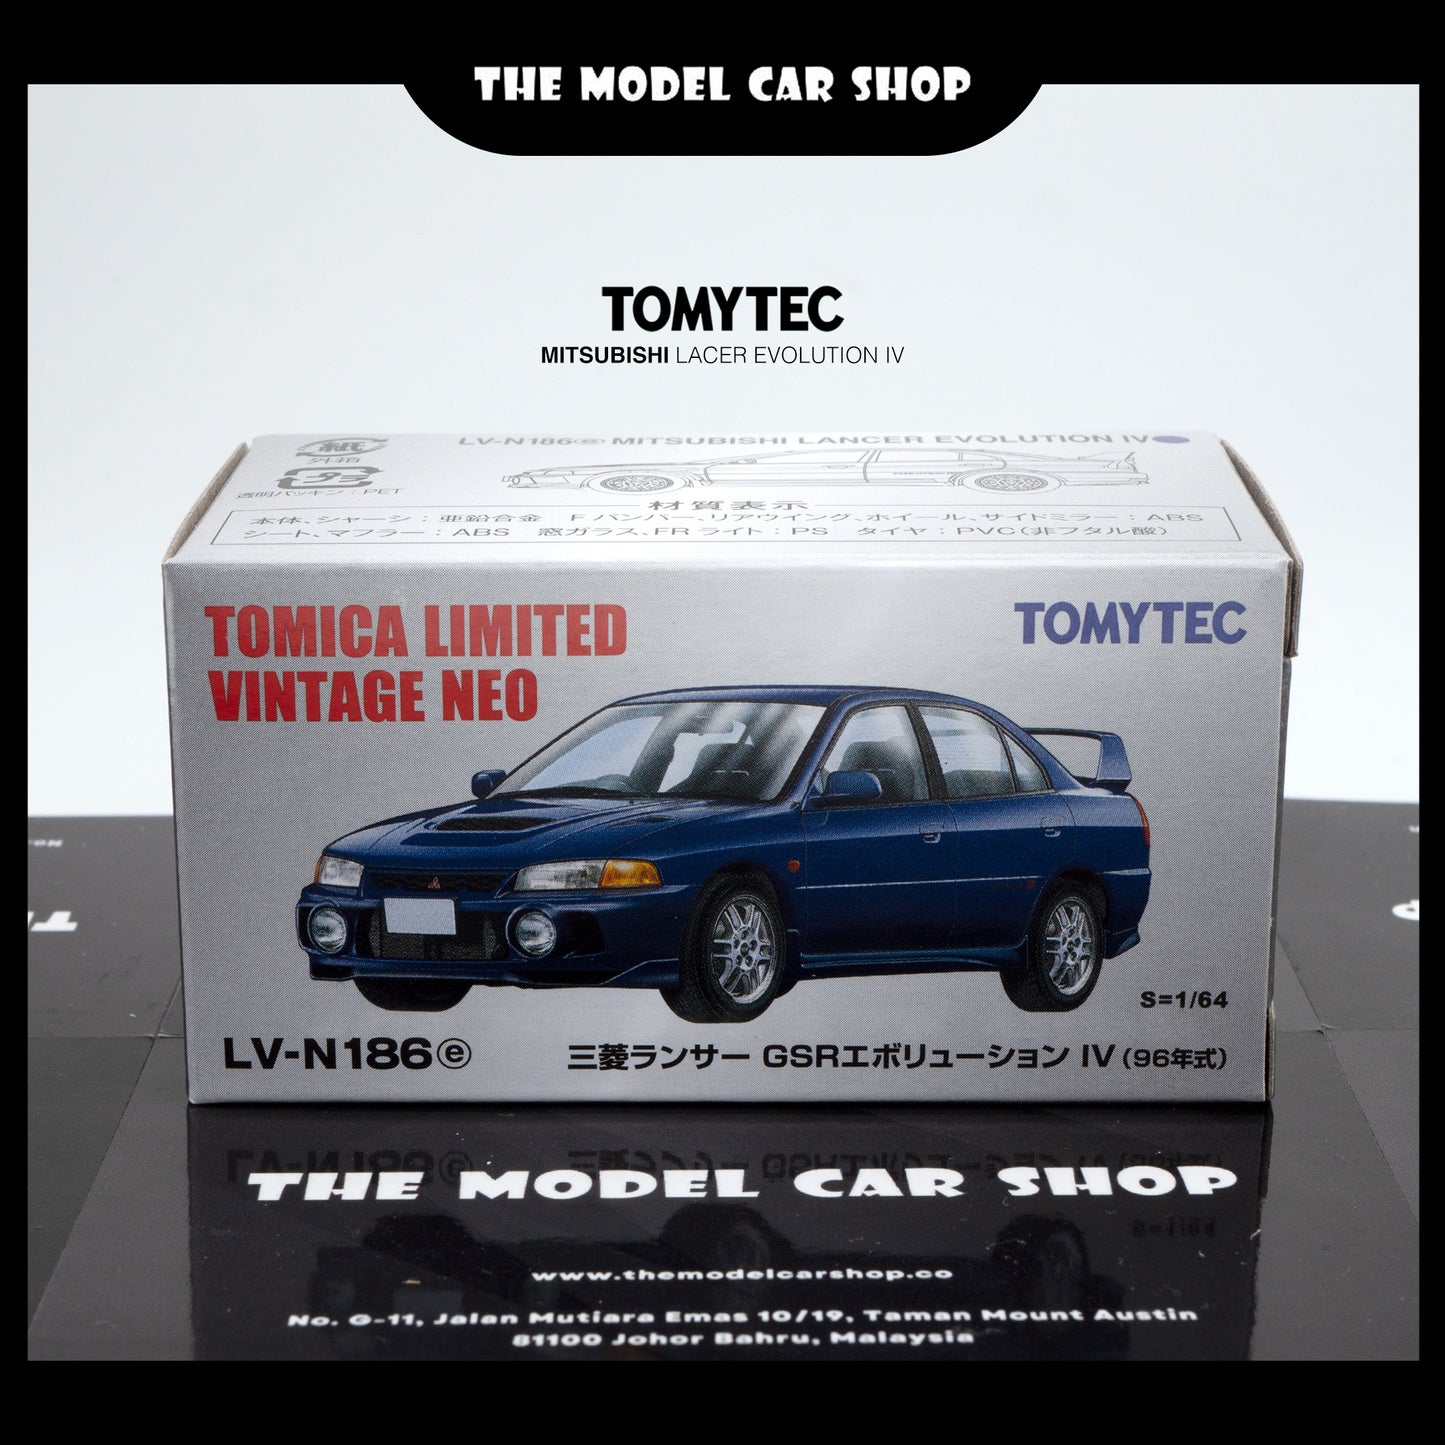 [TOMYTEC] Limited Vintage NEO Mitsubishi Lancer GSR Evolution IV - Blue